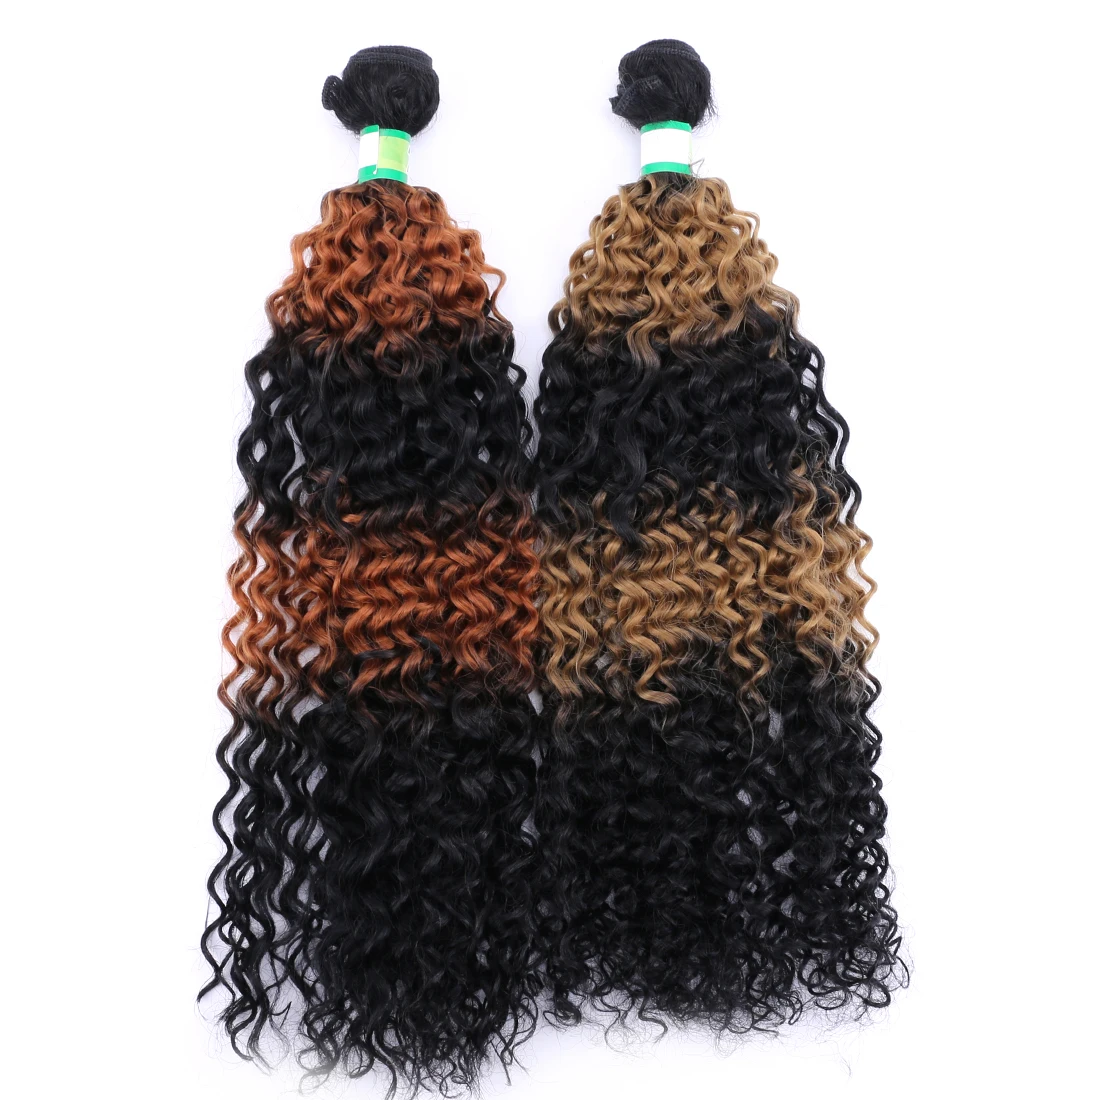 Афро кудрявые вьющиеся волосы градиент цвета 70 г/шт. высокотемпературное синтетическое устройство для наращивания волос уток